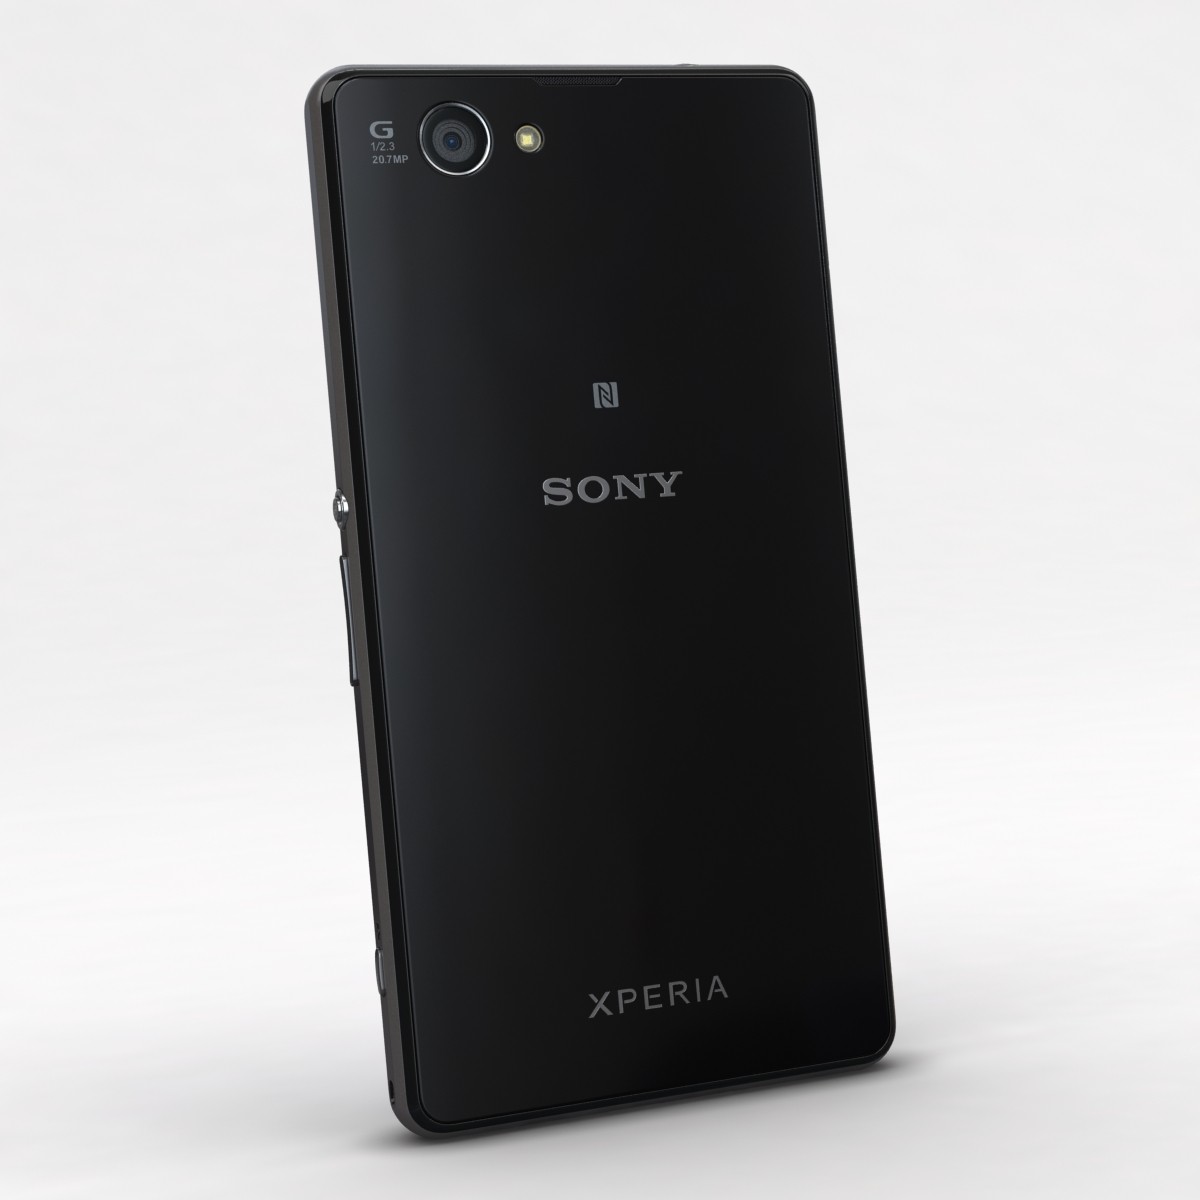 4pda xperia 1. Sony Xperia xz1. Sony Xperia z1 Compact. Sony Xperia z1 чёрный. Sony Xperia z1 Plus.